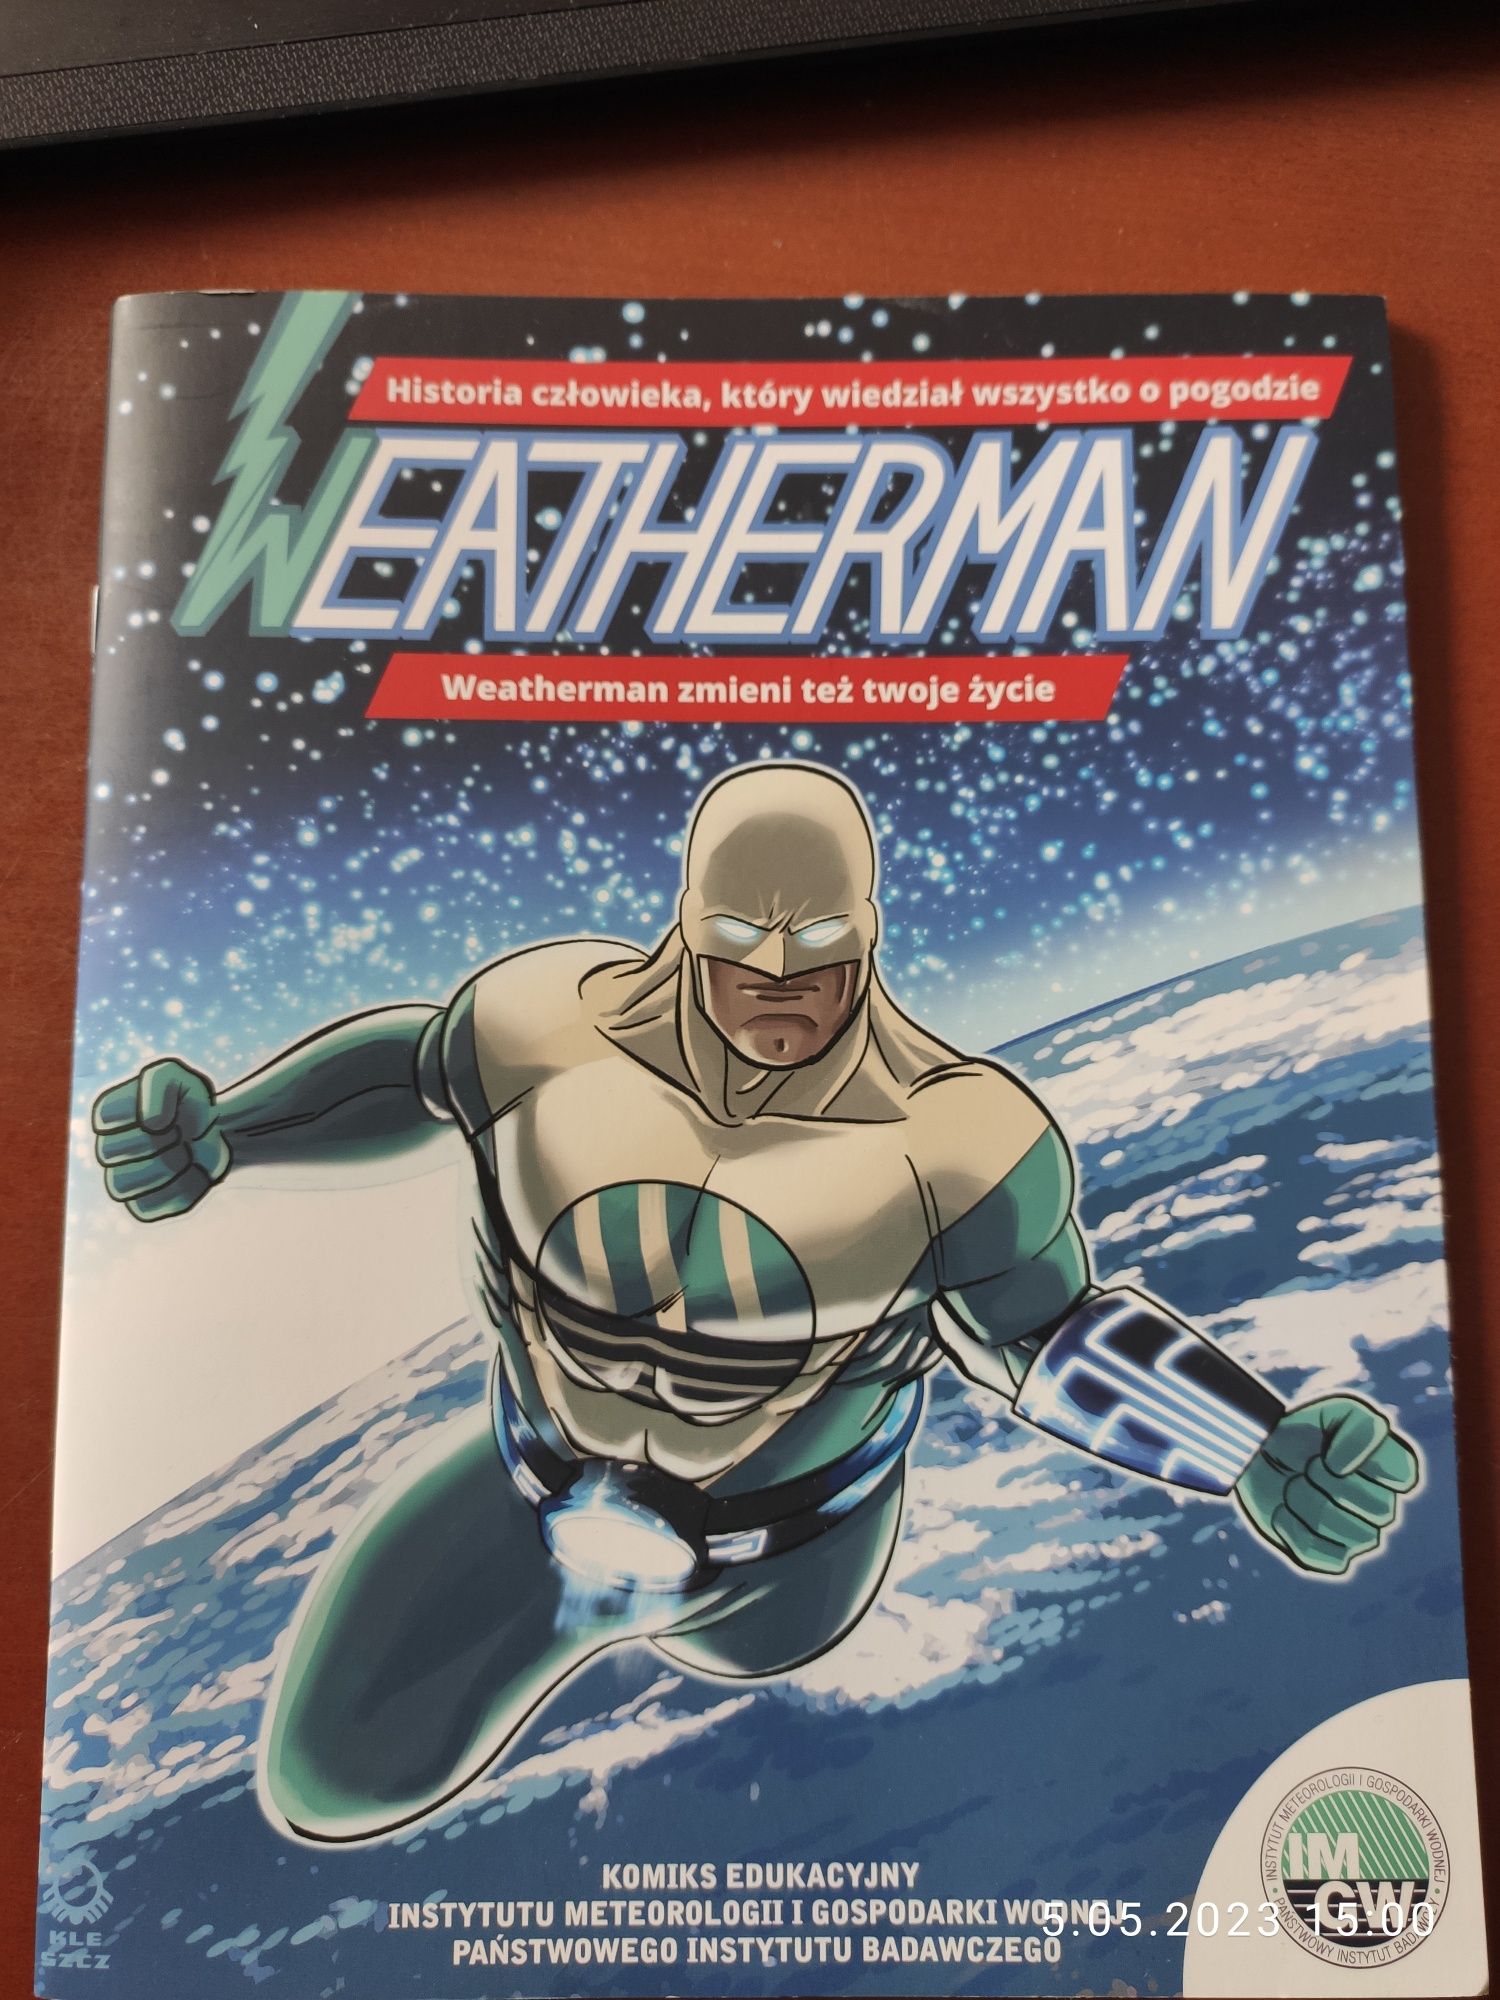 Komiks Weatherman Człowiek, który wiedział wszystko o pogodzie